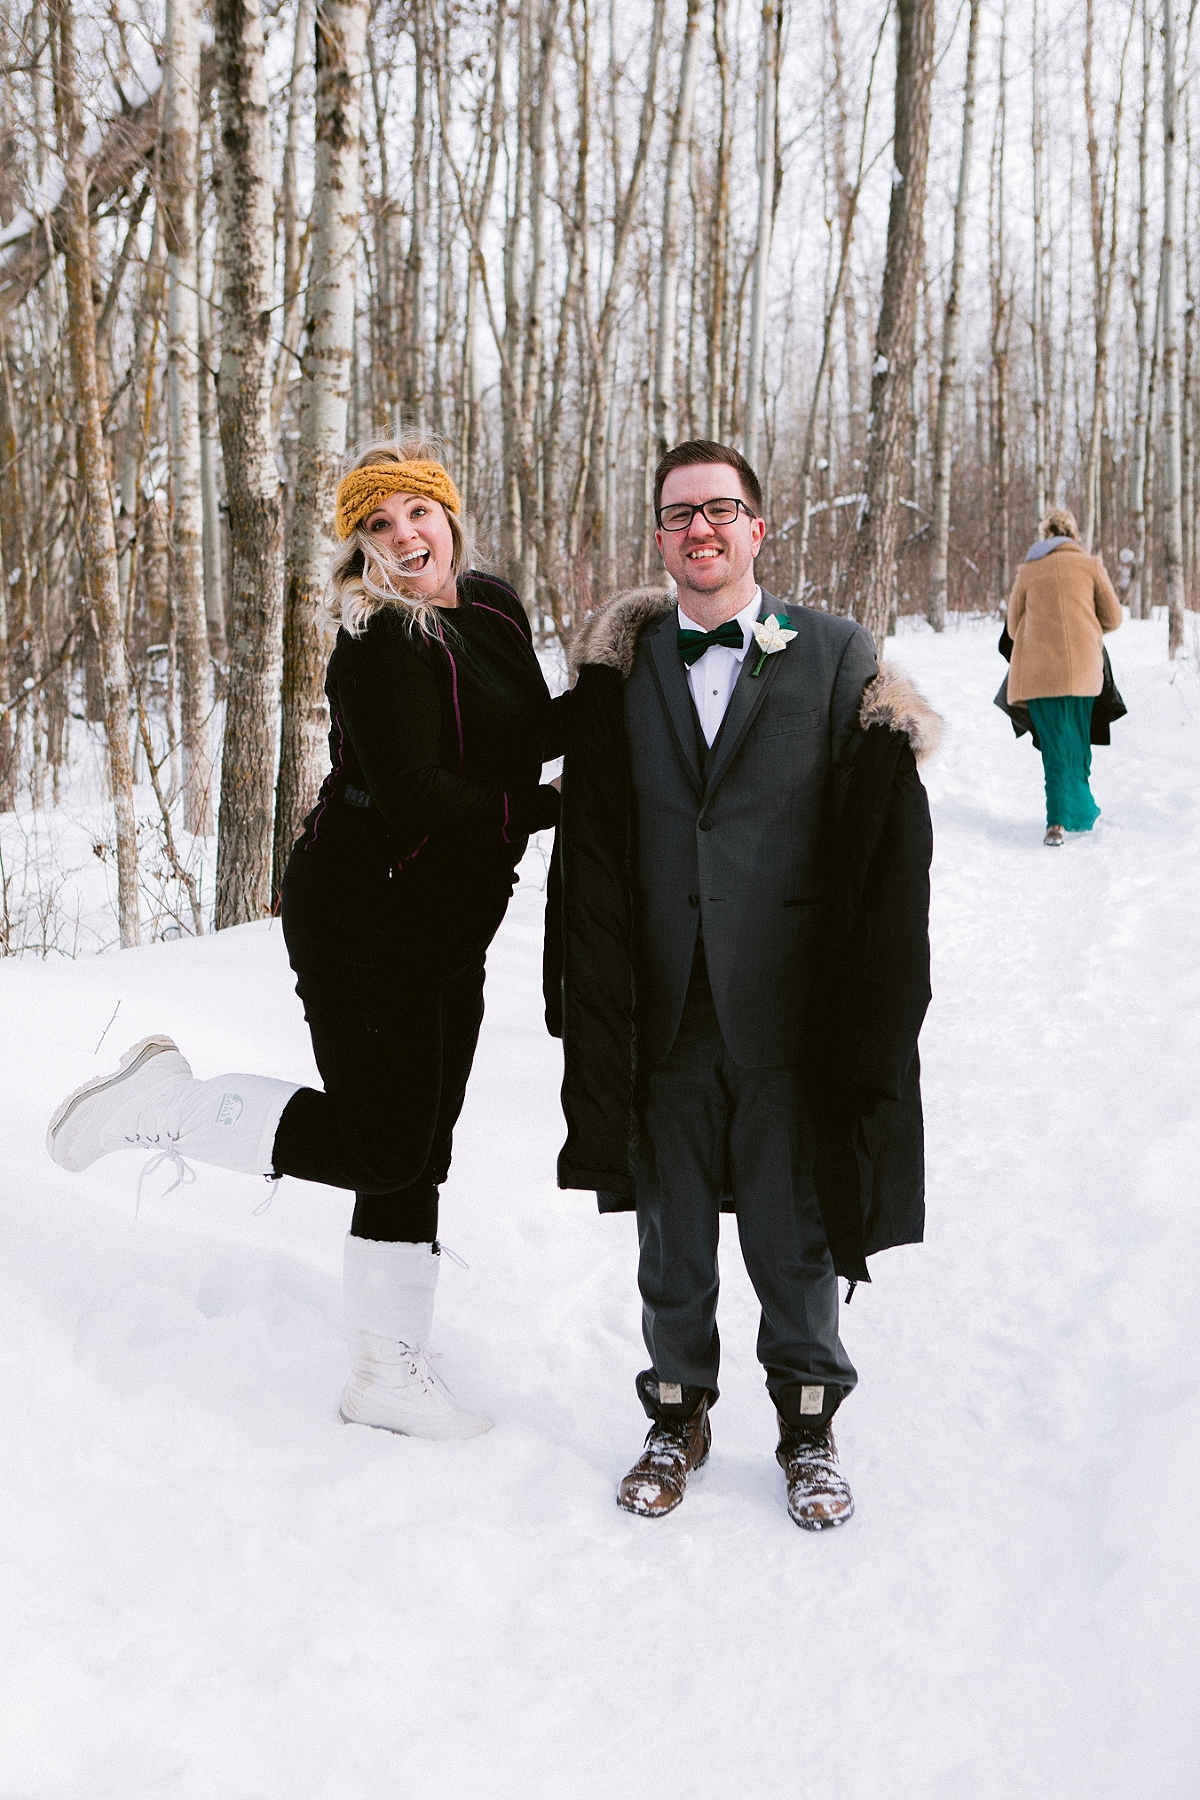 Edmonton Wedding Photography | Edmonton Wedding Photographers